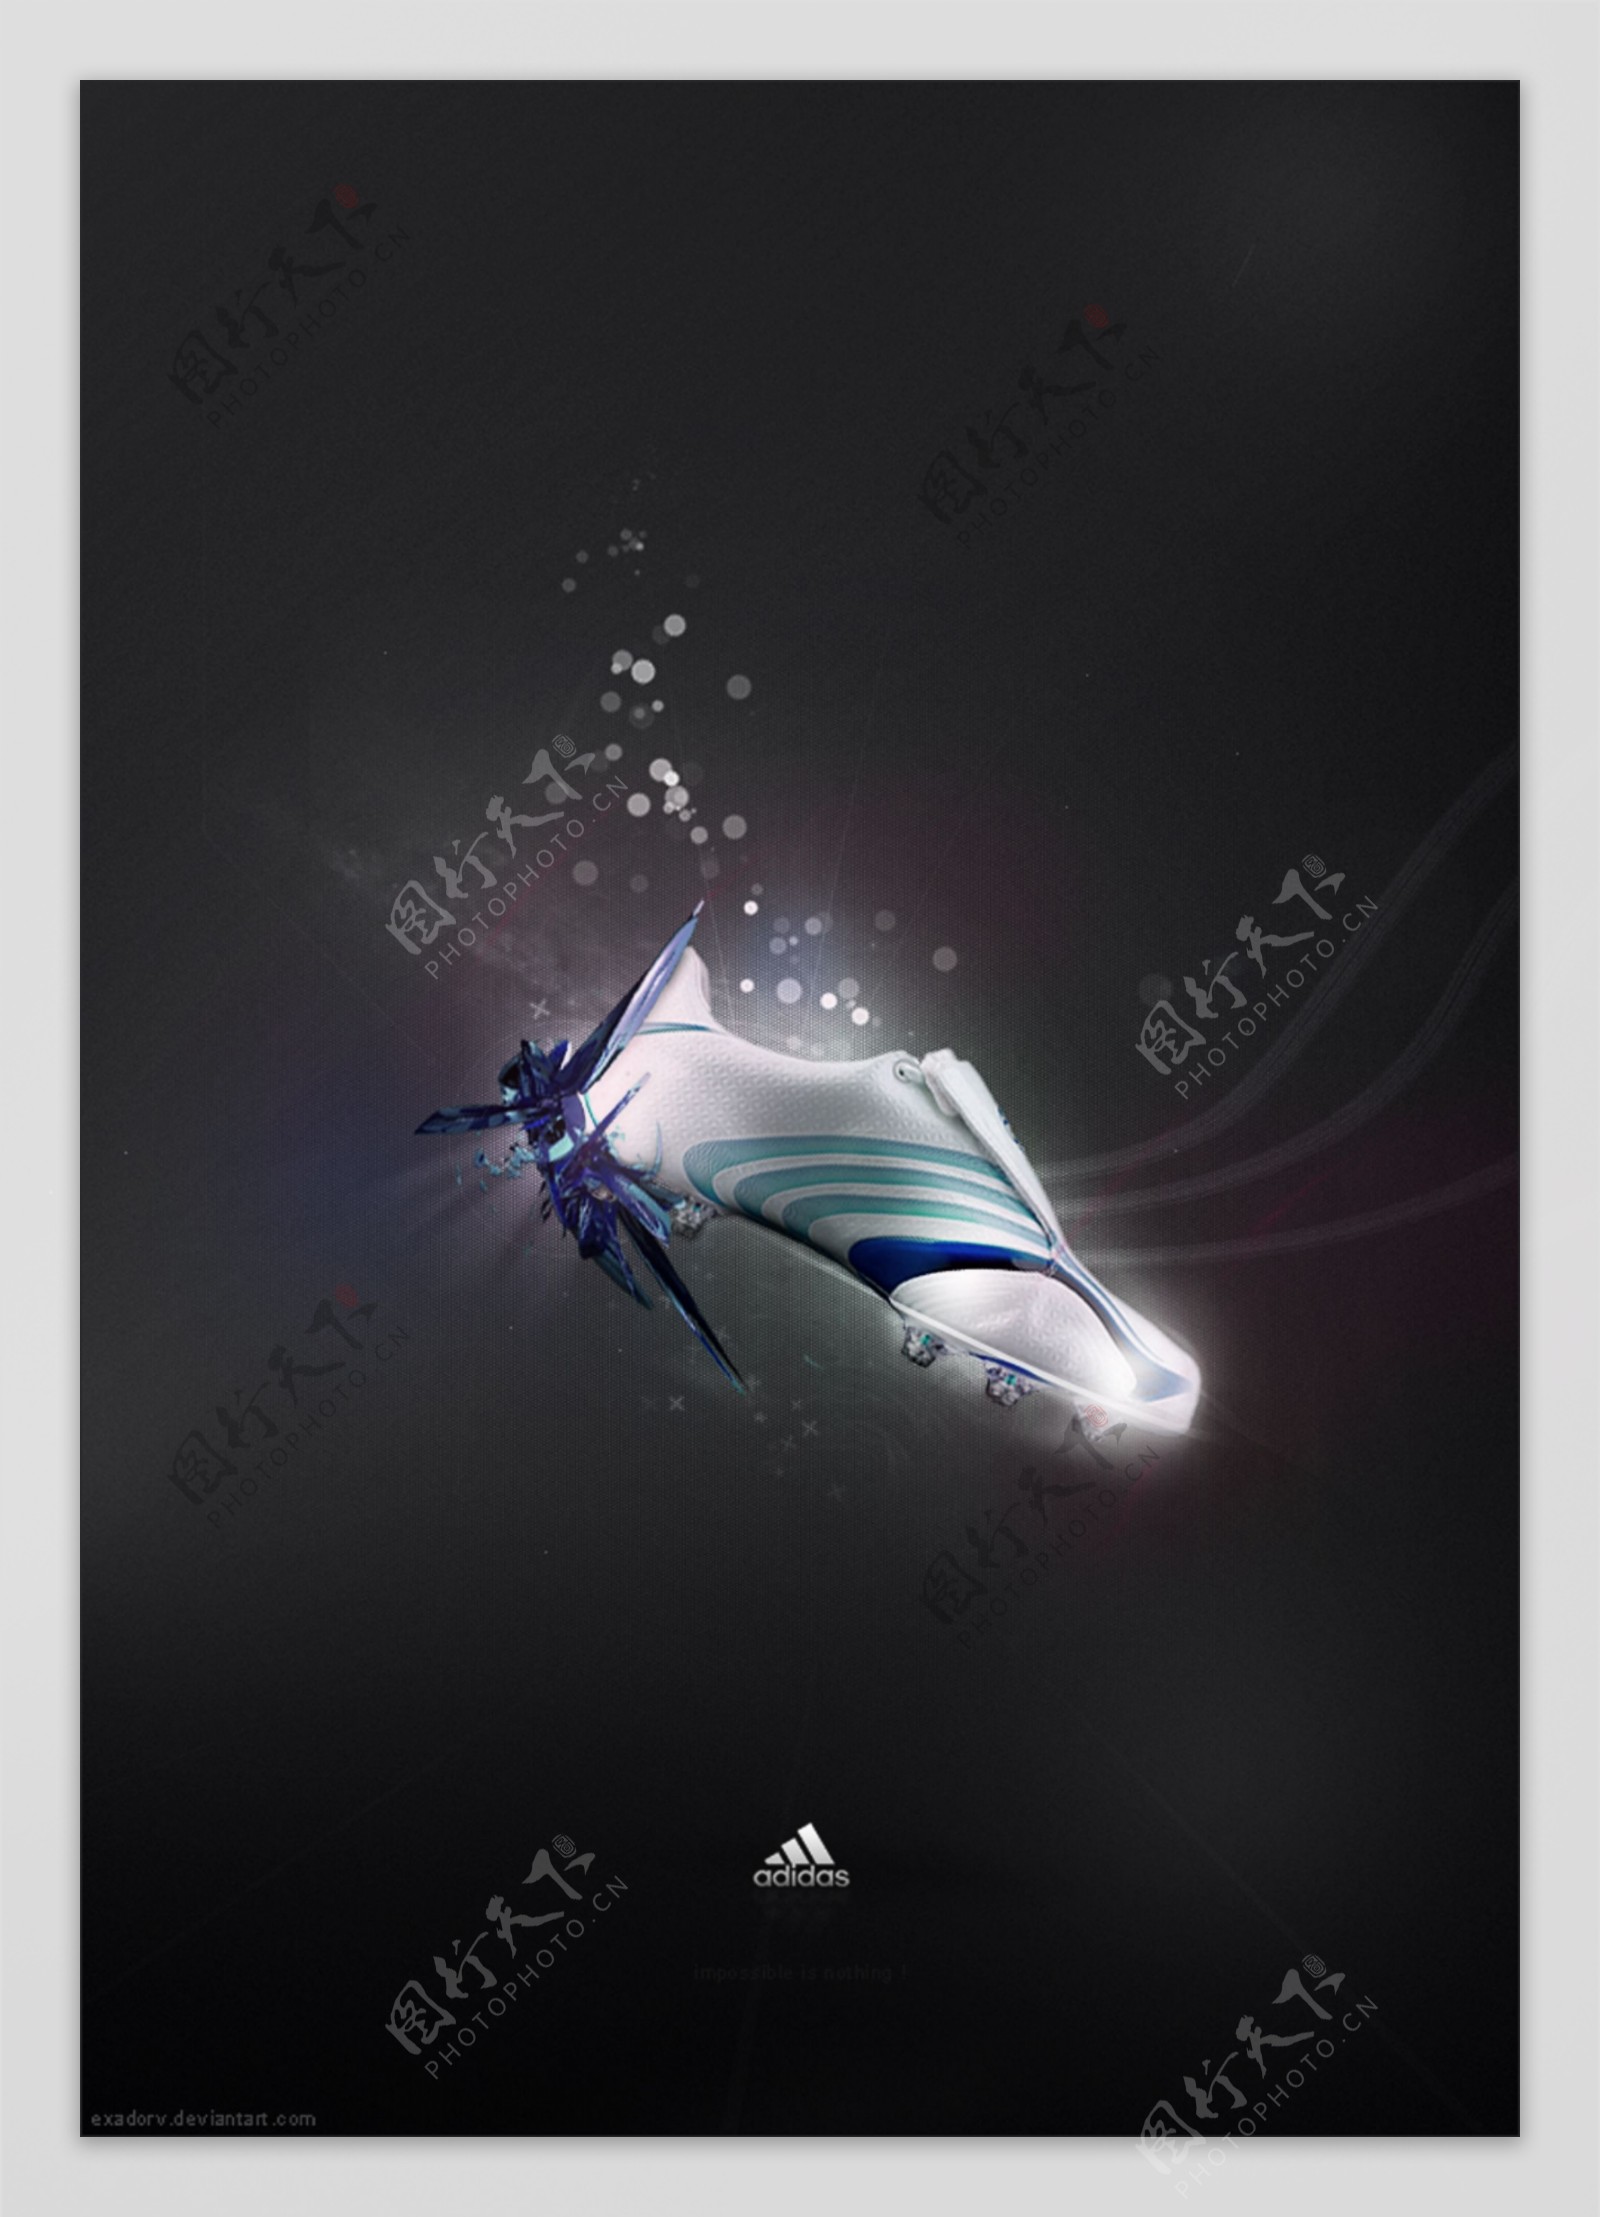 Adidas3张广告PSD模板下载